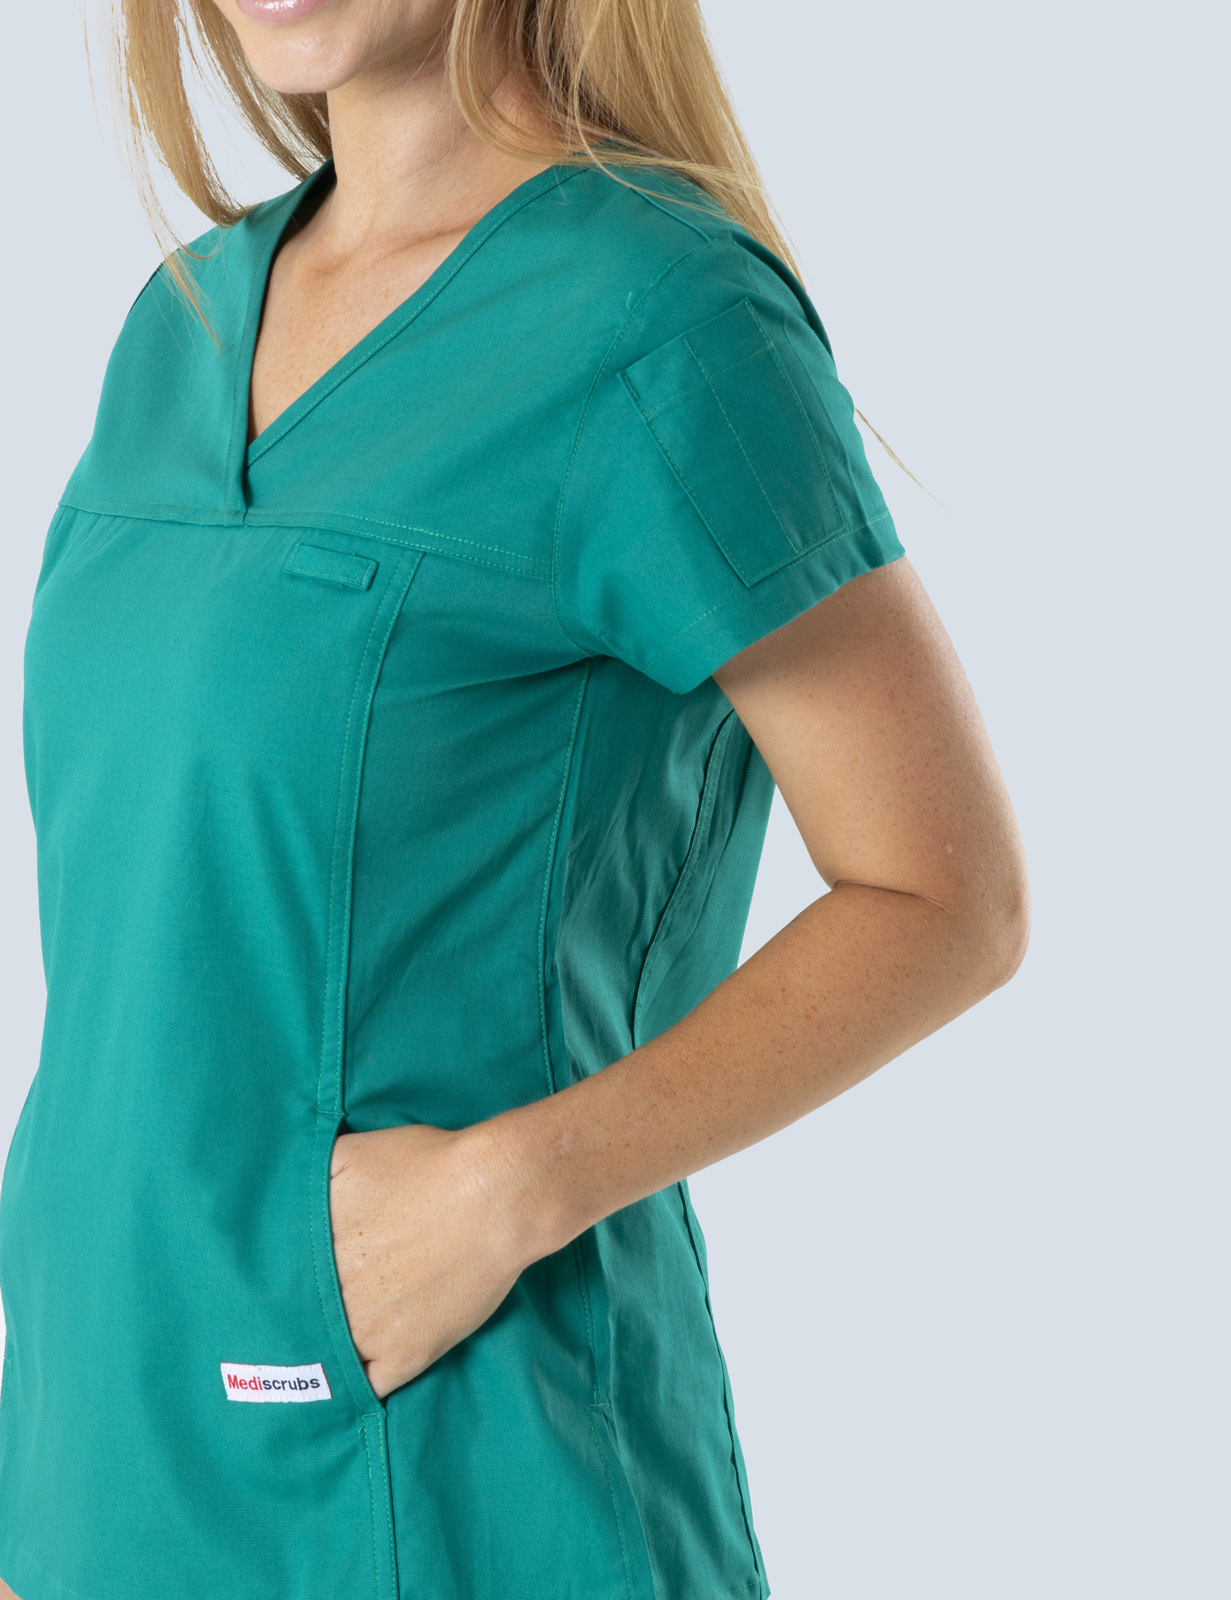 Queensland Children's Hospital Emergency Department Nurse Practitioner Uniform Top Bundle  (Women's Fit Top in Hunter incl Logos)